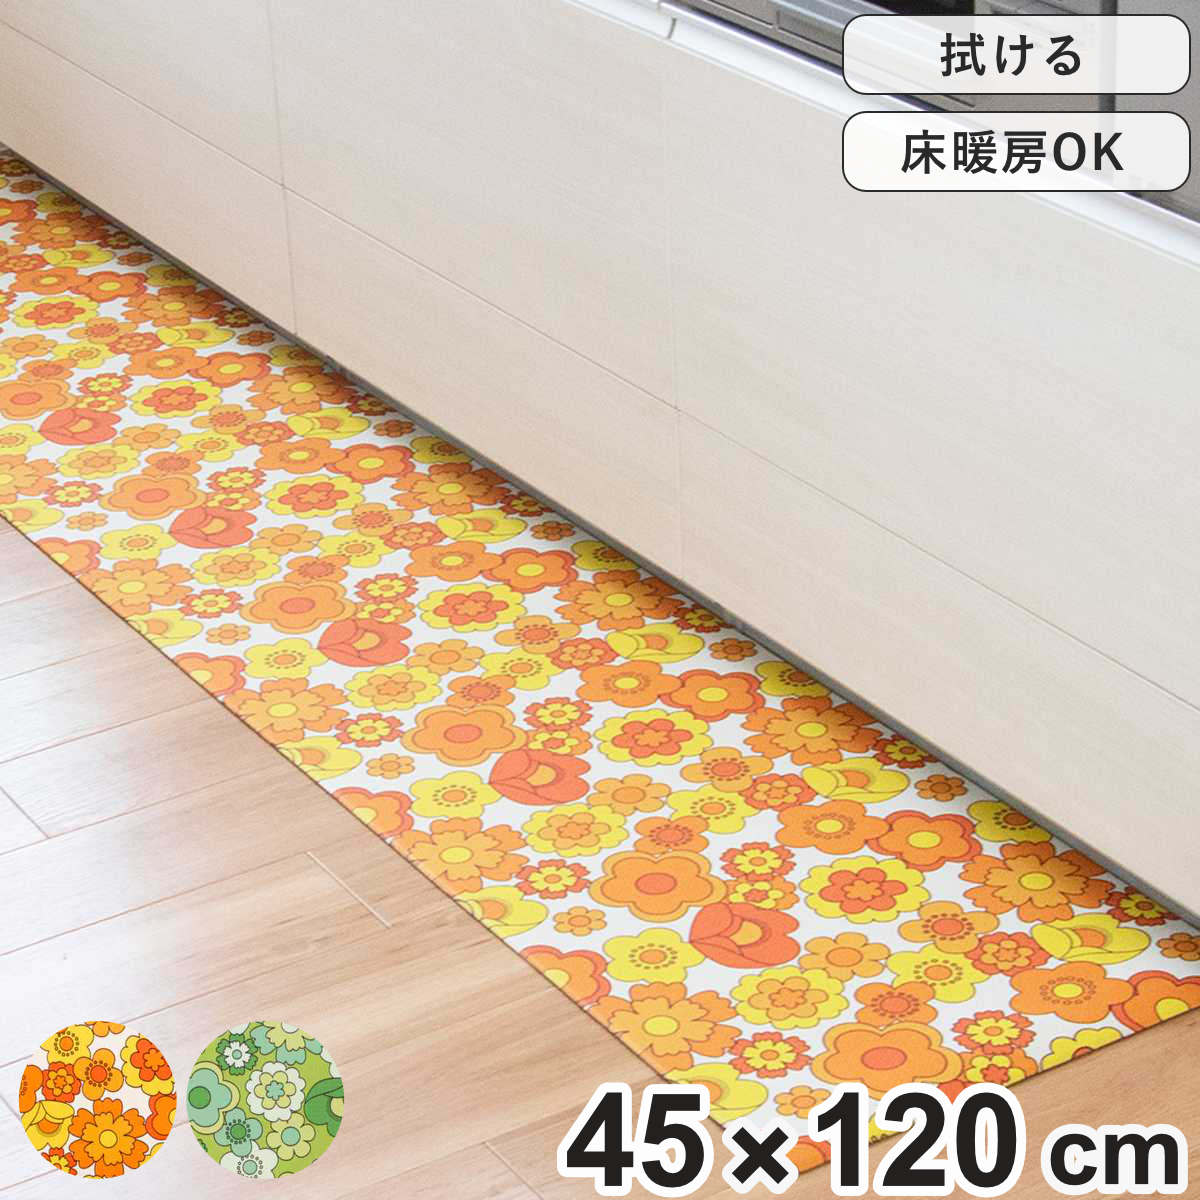 キッチンマット レトロ 花柄 ルアンス 45×120cm